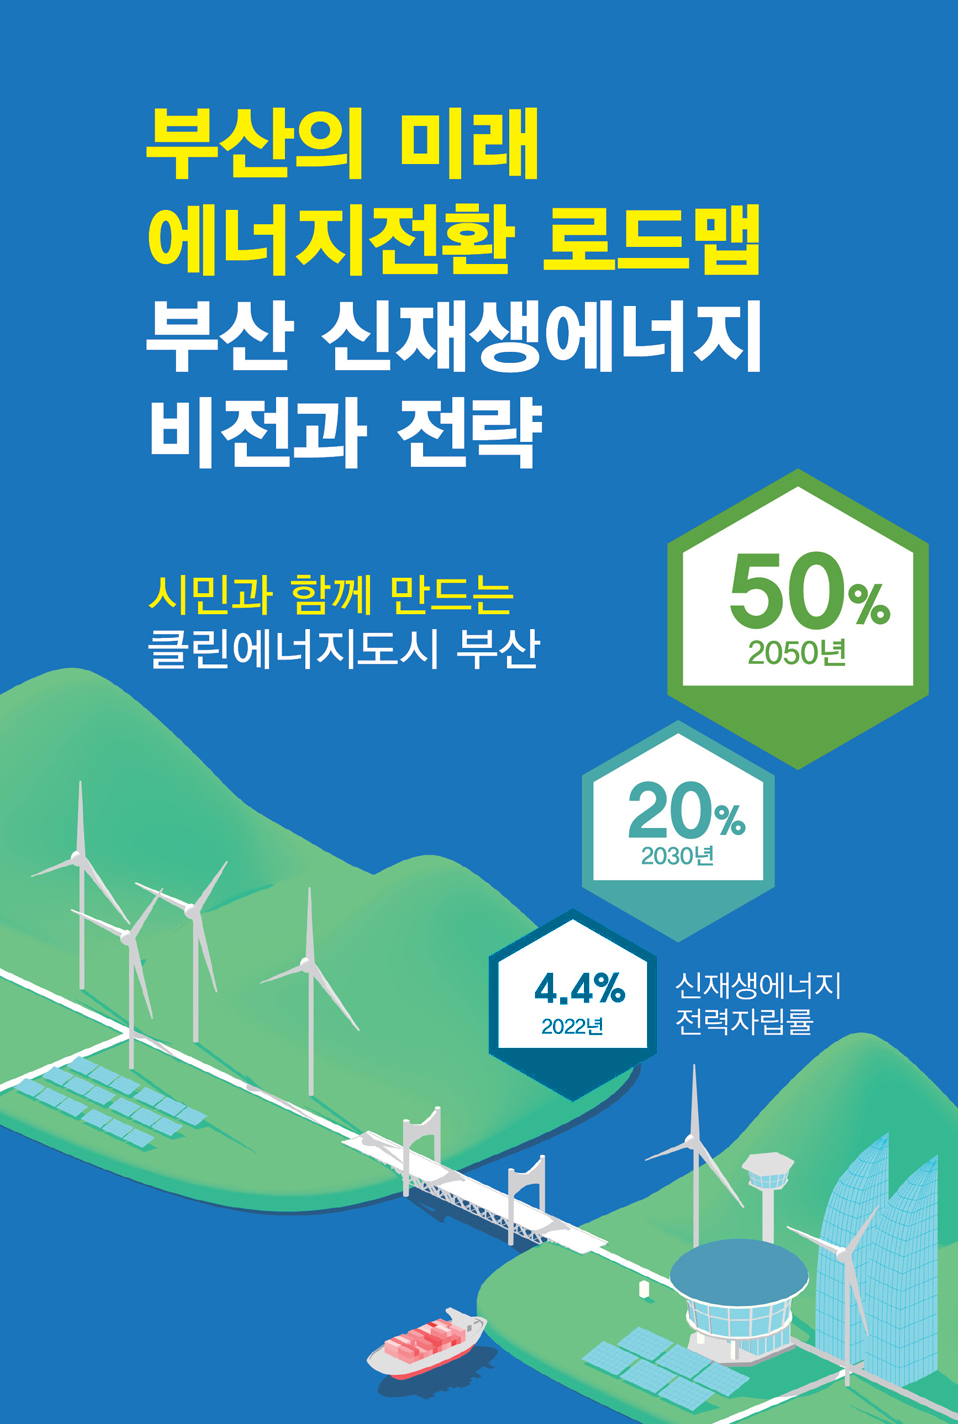 부산의 미래 에너지전환 로드맵
부산 신재생에너지 비전과 전략
시민과 함께 만드는 클린에너지도시 부산
신재생에너지 전력자립률
2022년 4.4% 2030년 20% 2050년 50%